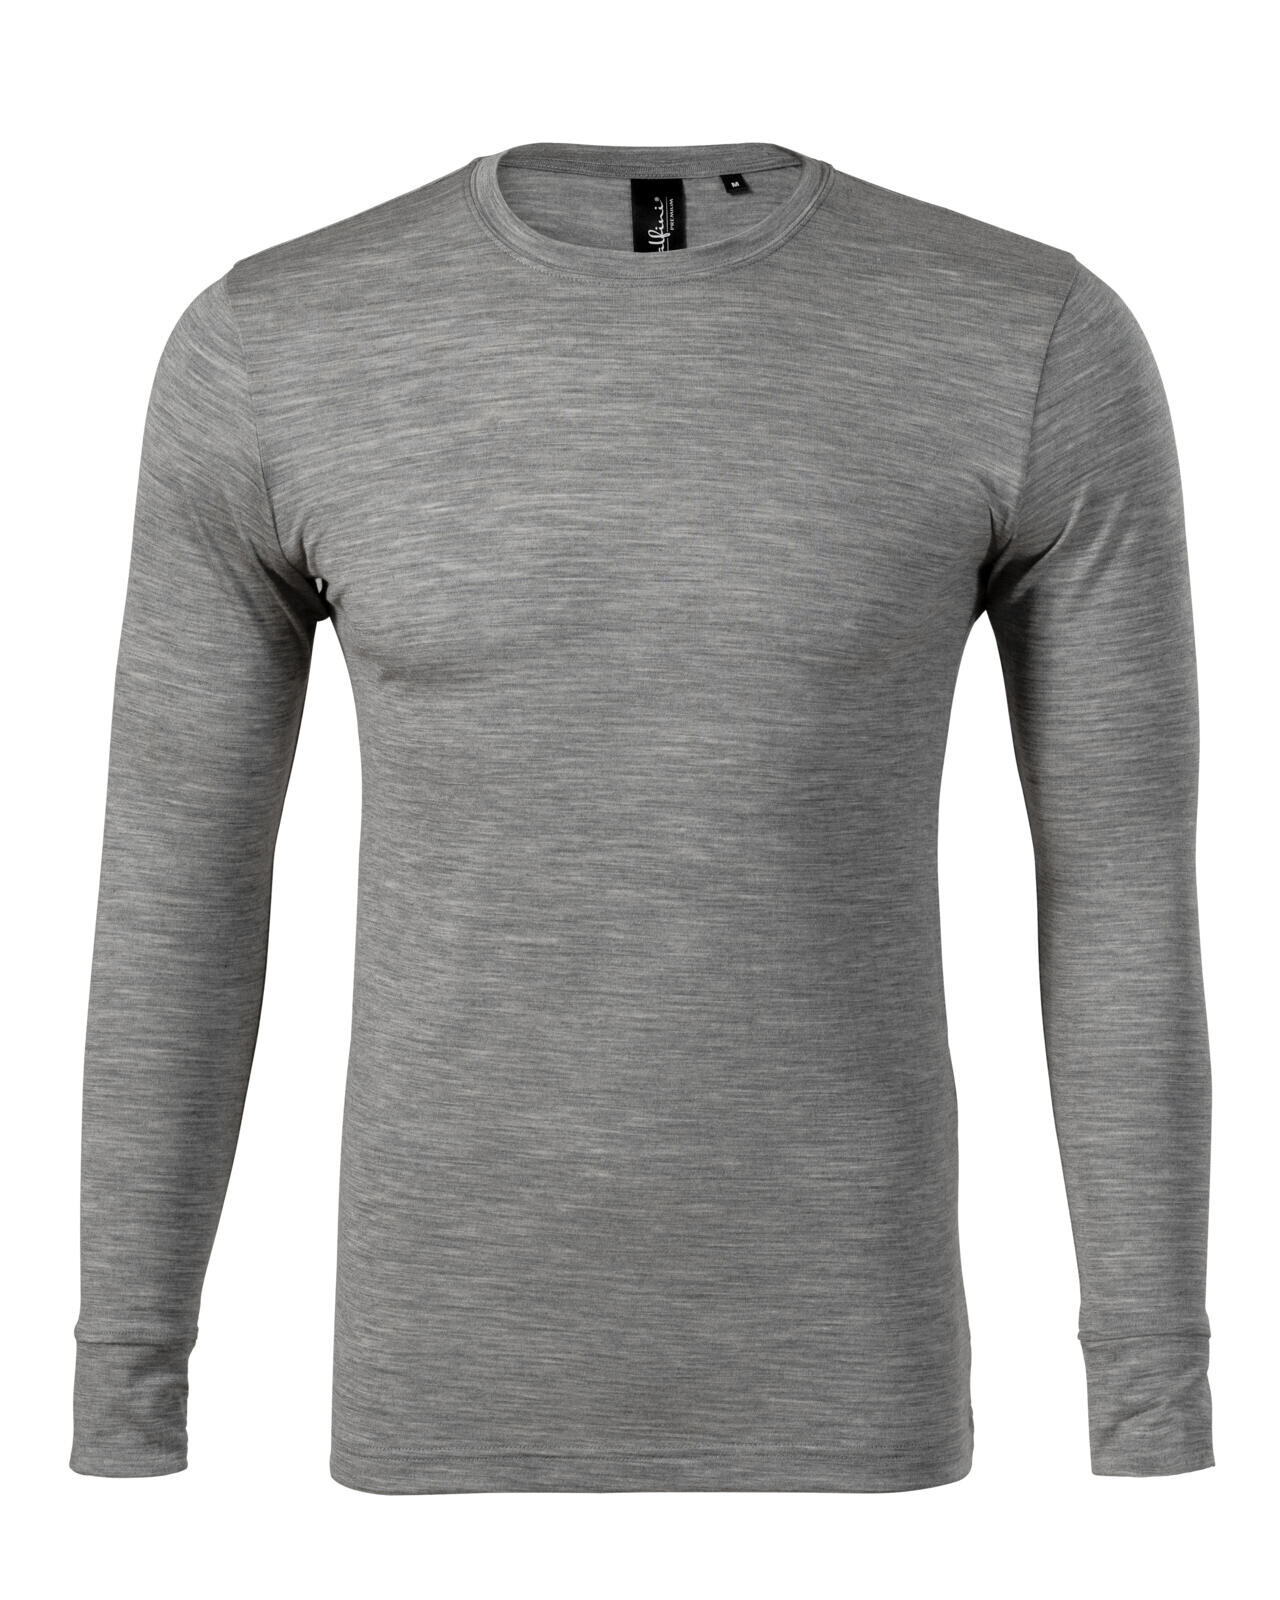 Pánske merino tričko s dlhým rukávom Malfini Premium Merino Rise LS 159 - veľkosť: XL, farba: tmavosivý melír